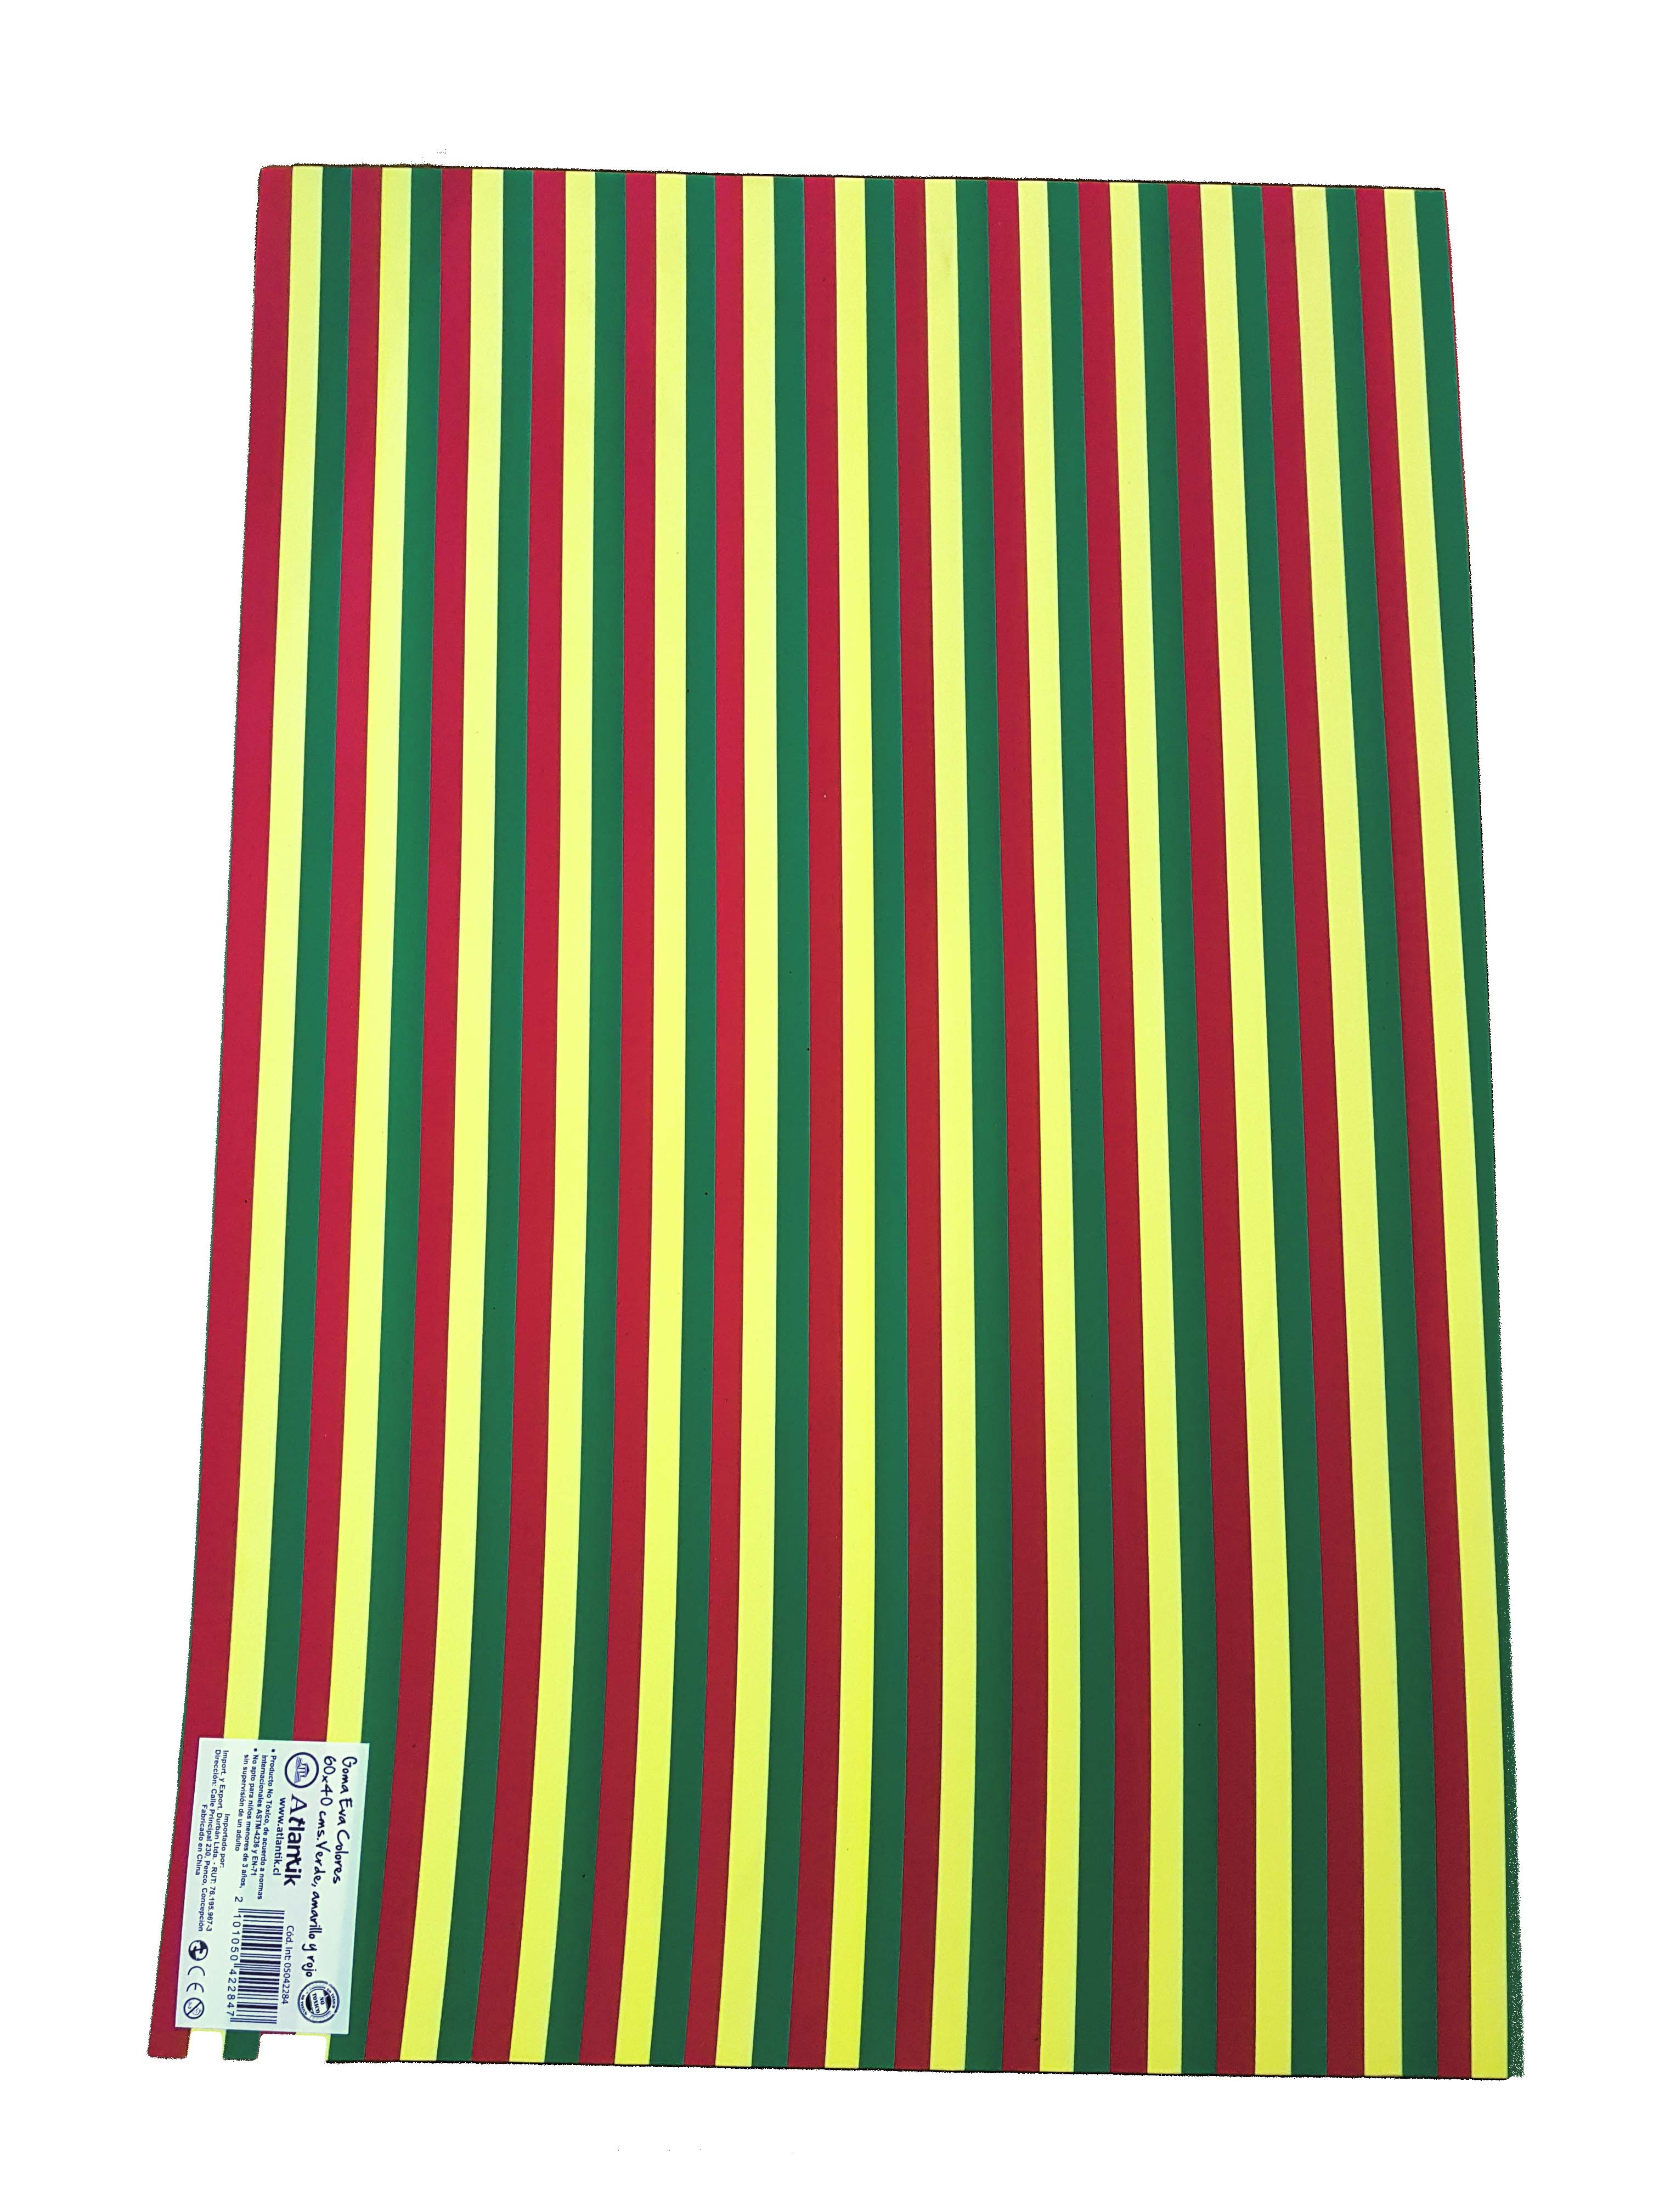 Foto Goma eva tricolor amarillo, verde y rojo